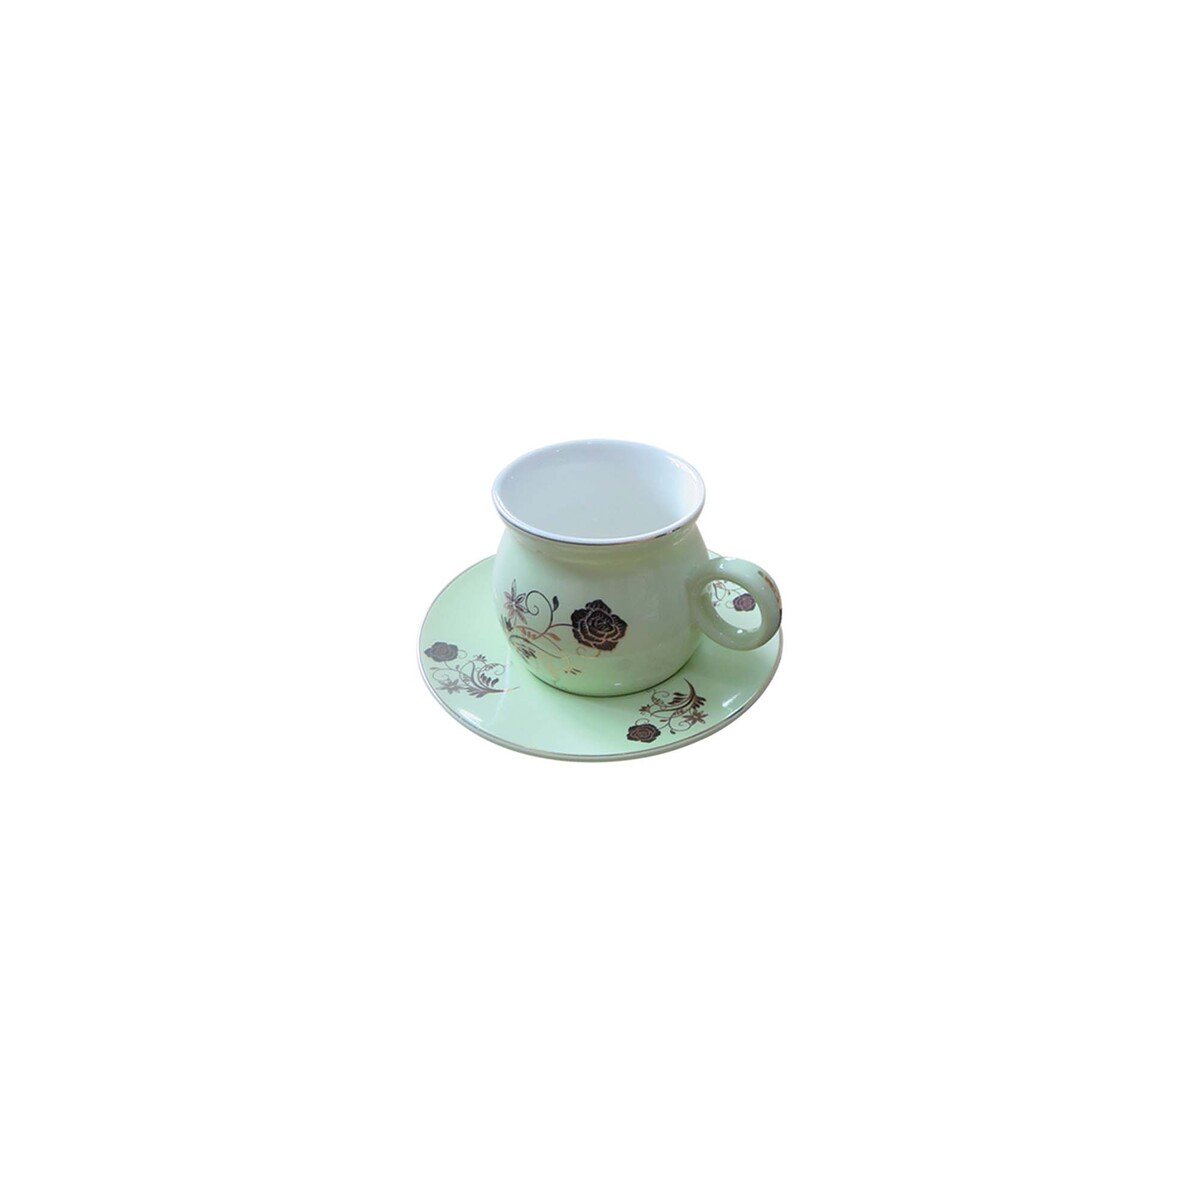 Pearl Noire Cup & Saucer 12pcs TC104-2 200c Assorted Colors/Designs